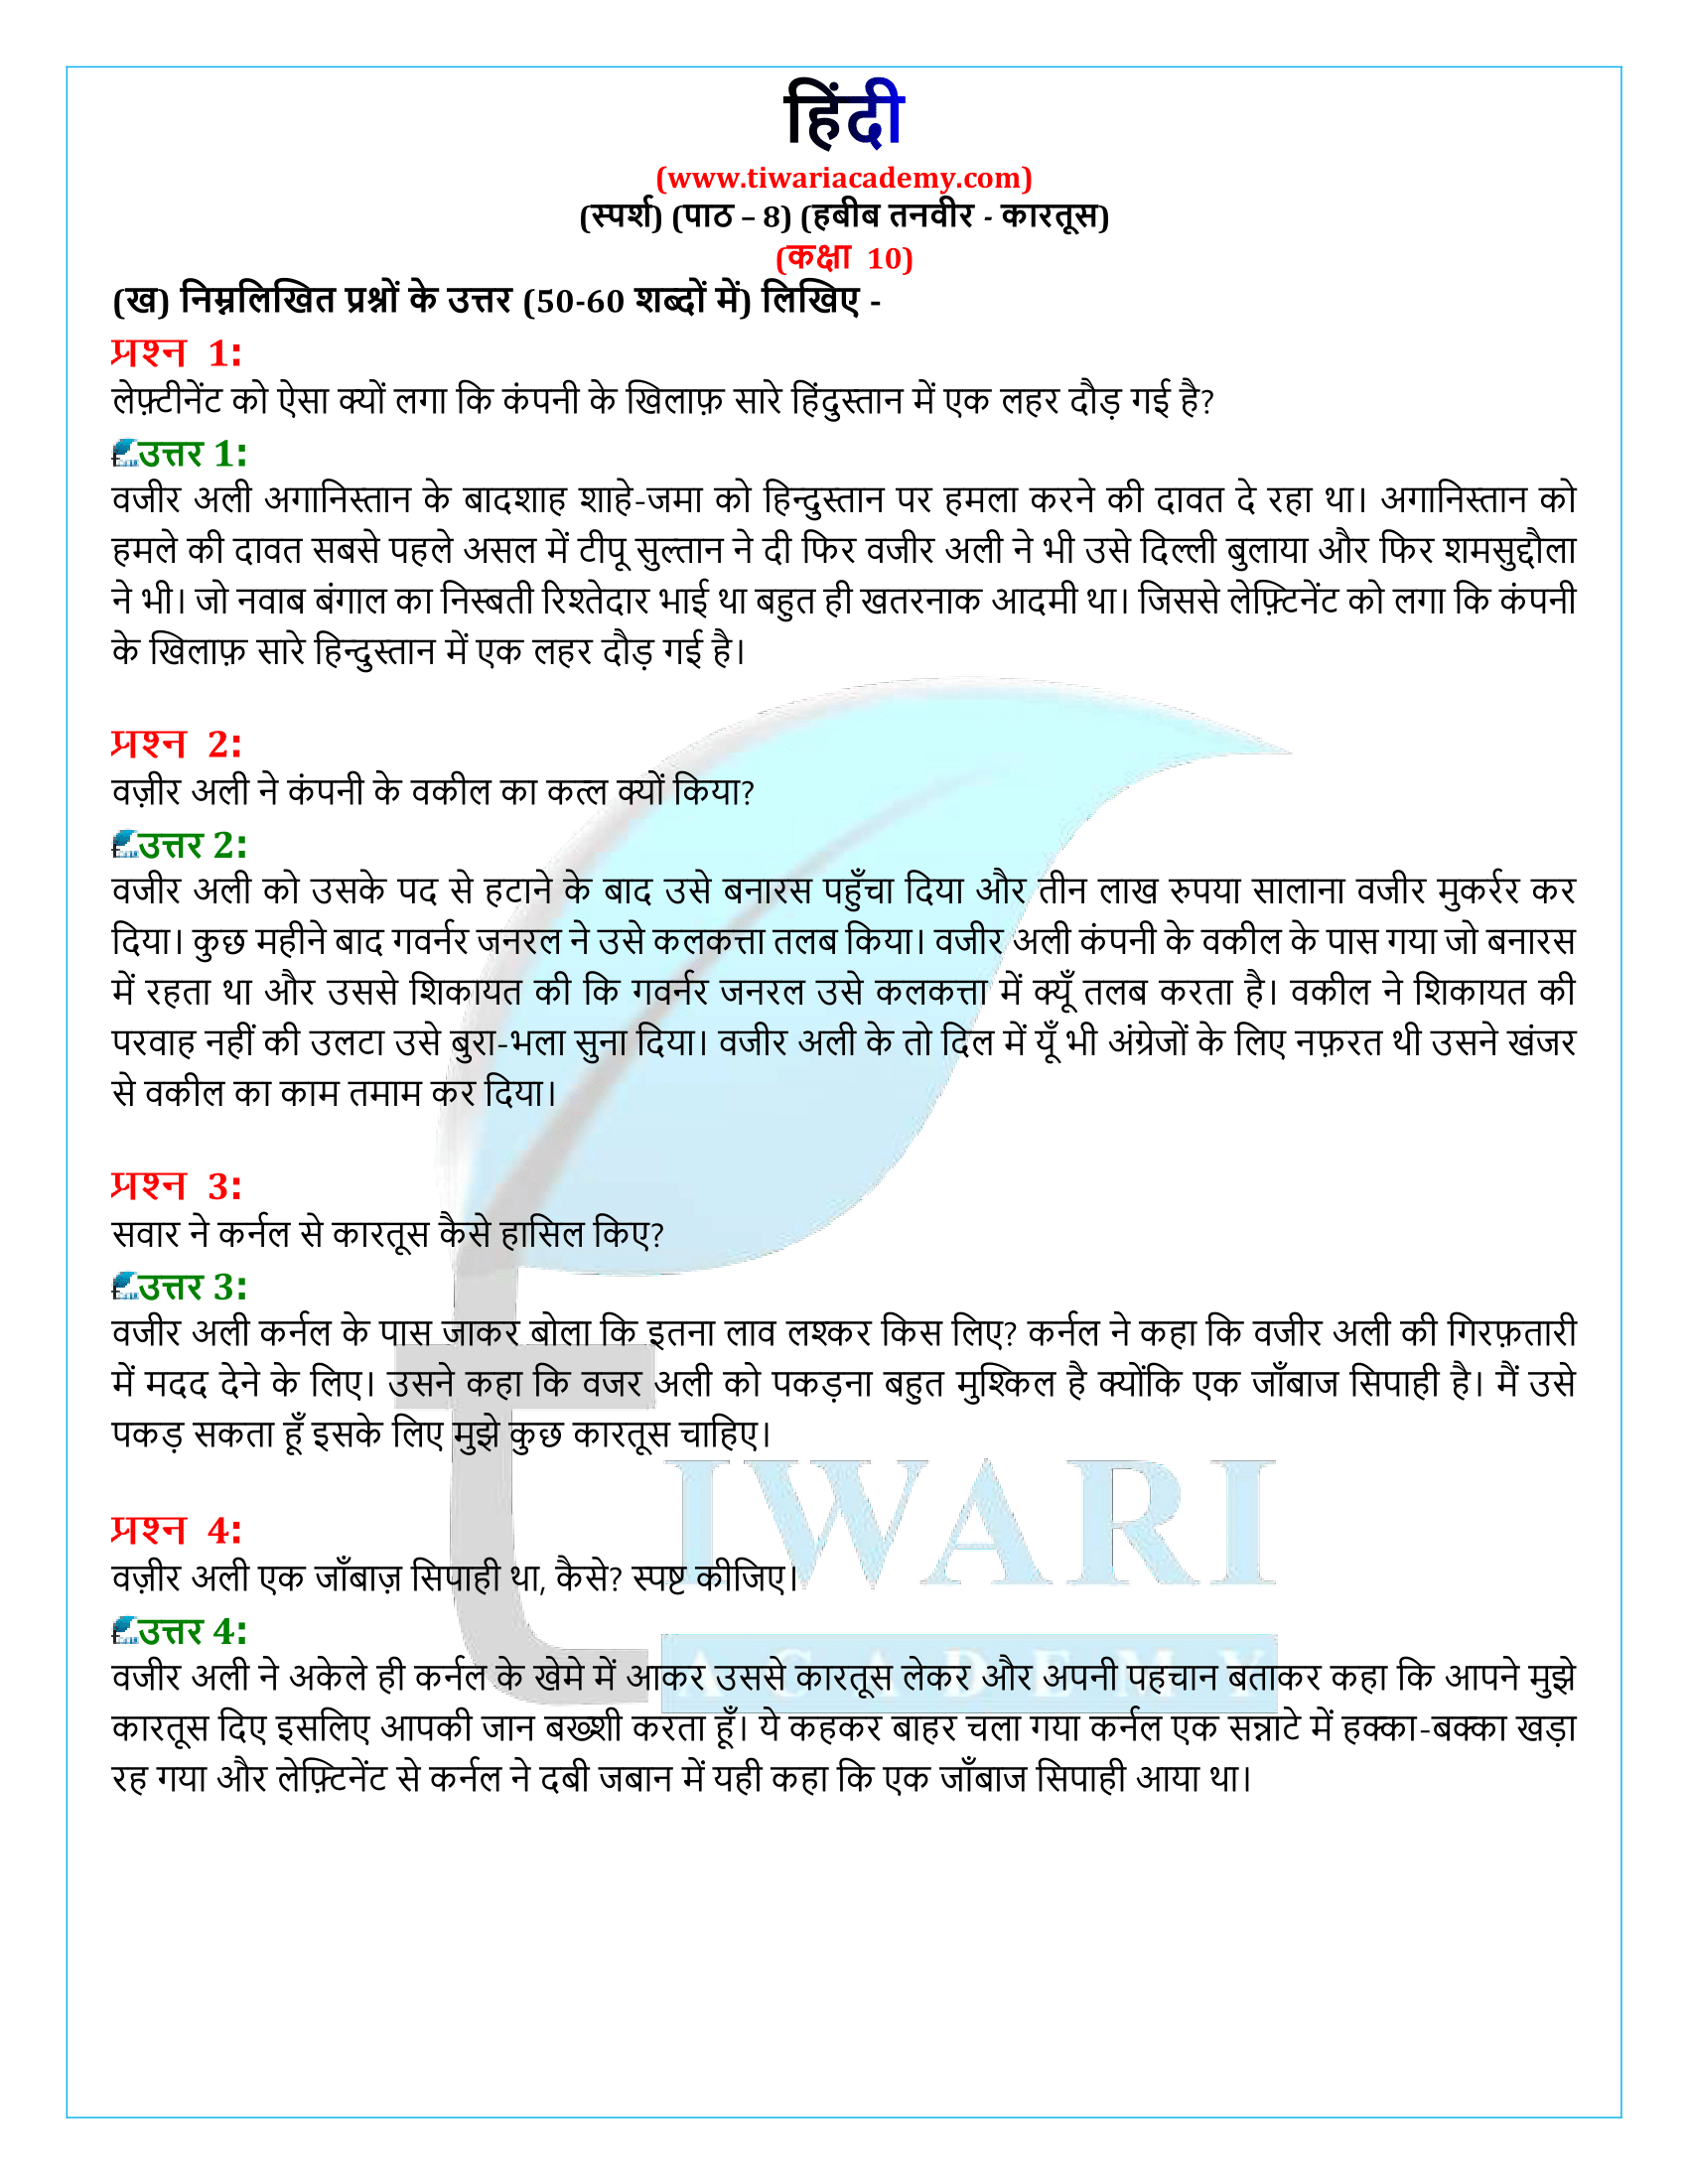 कक्षा 10 हिंदी स्पर्श गद्य अध्याय 8